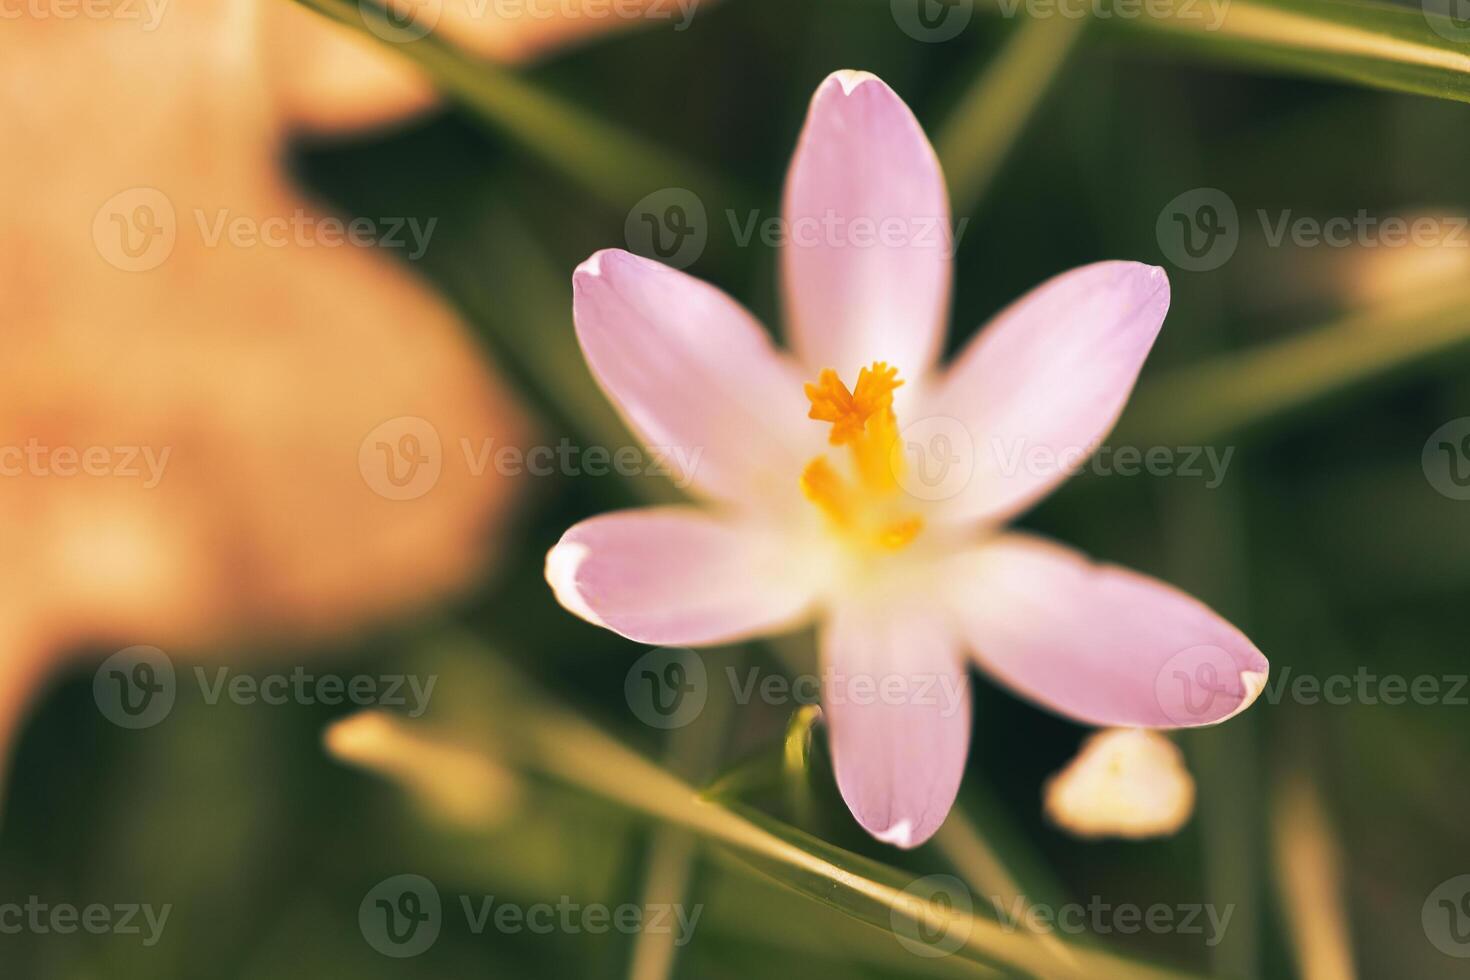 Single Krokus Blume zart abgebildet im Sanft warm Licht. Frühling Blumen foto